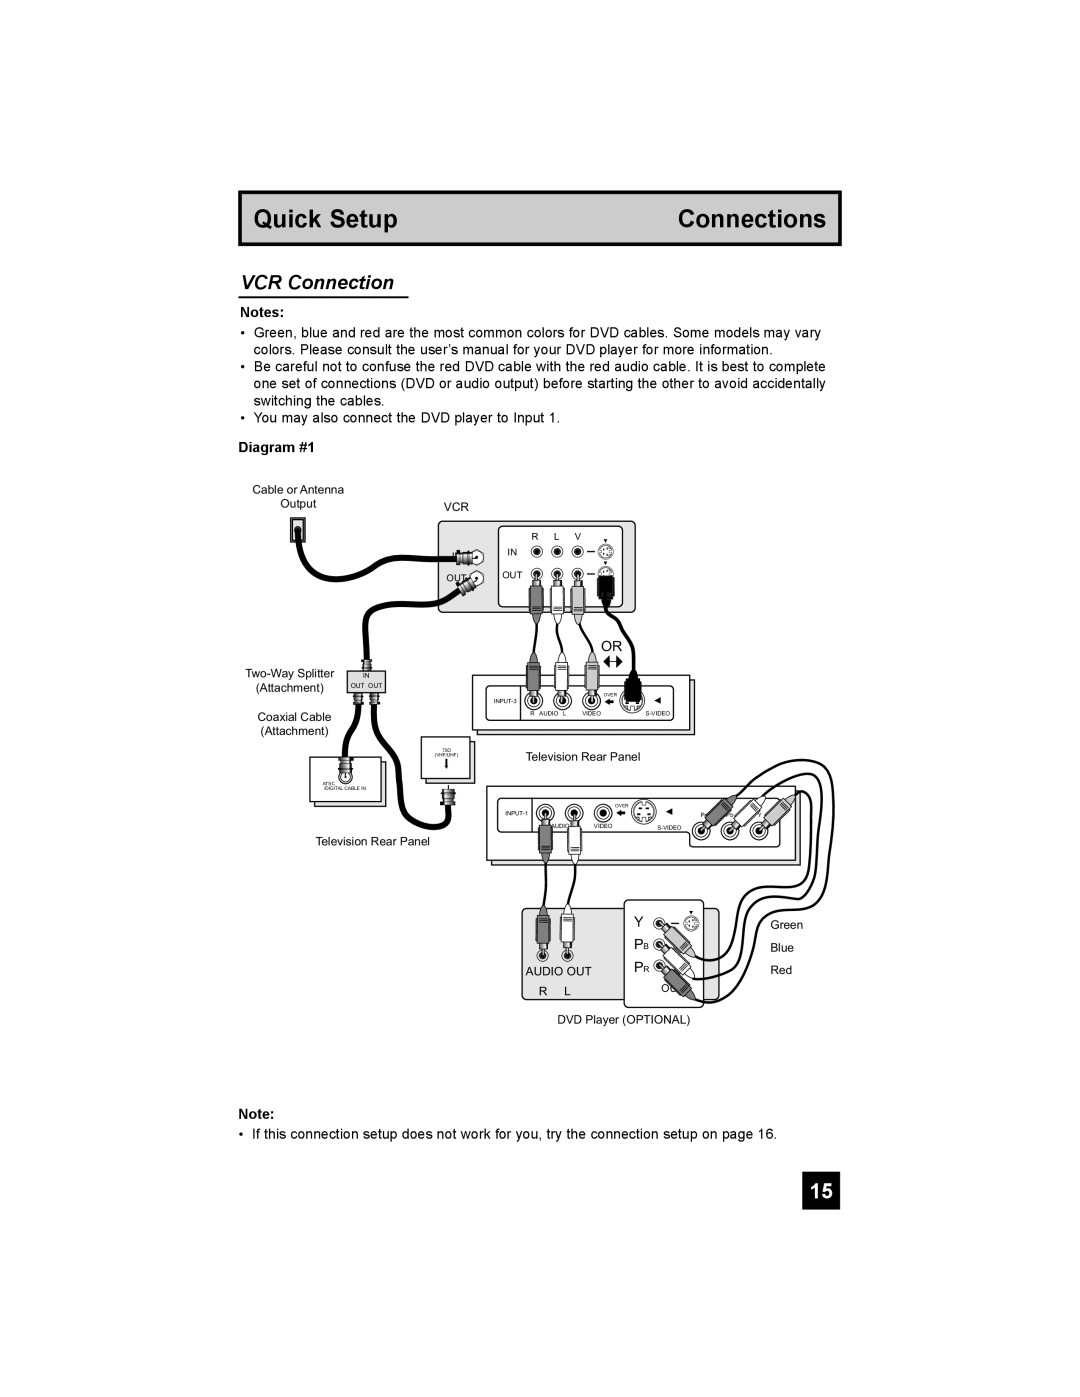 JVC PD-42X776 manual VCR Connection, Quick Setup, Connections, Diagram #1 